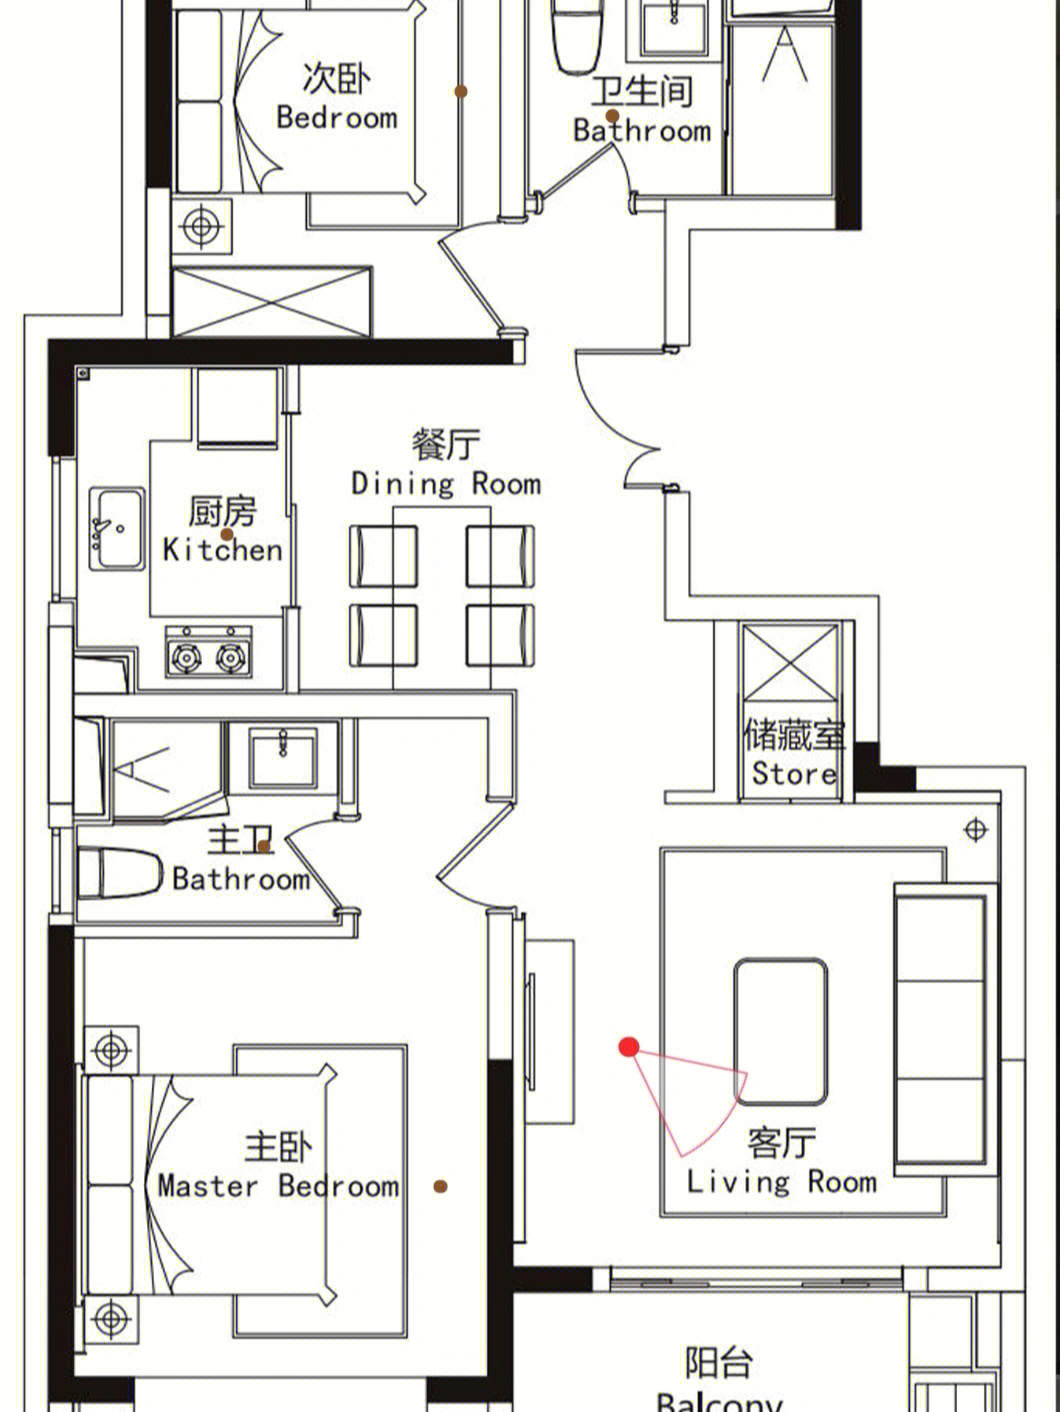 长方形房屋九宫格画法图片